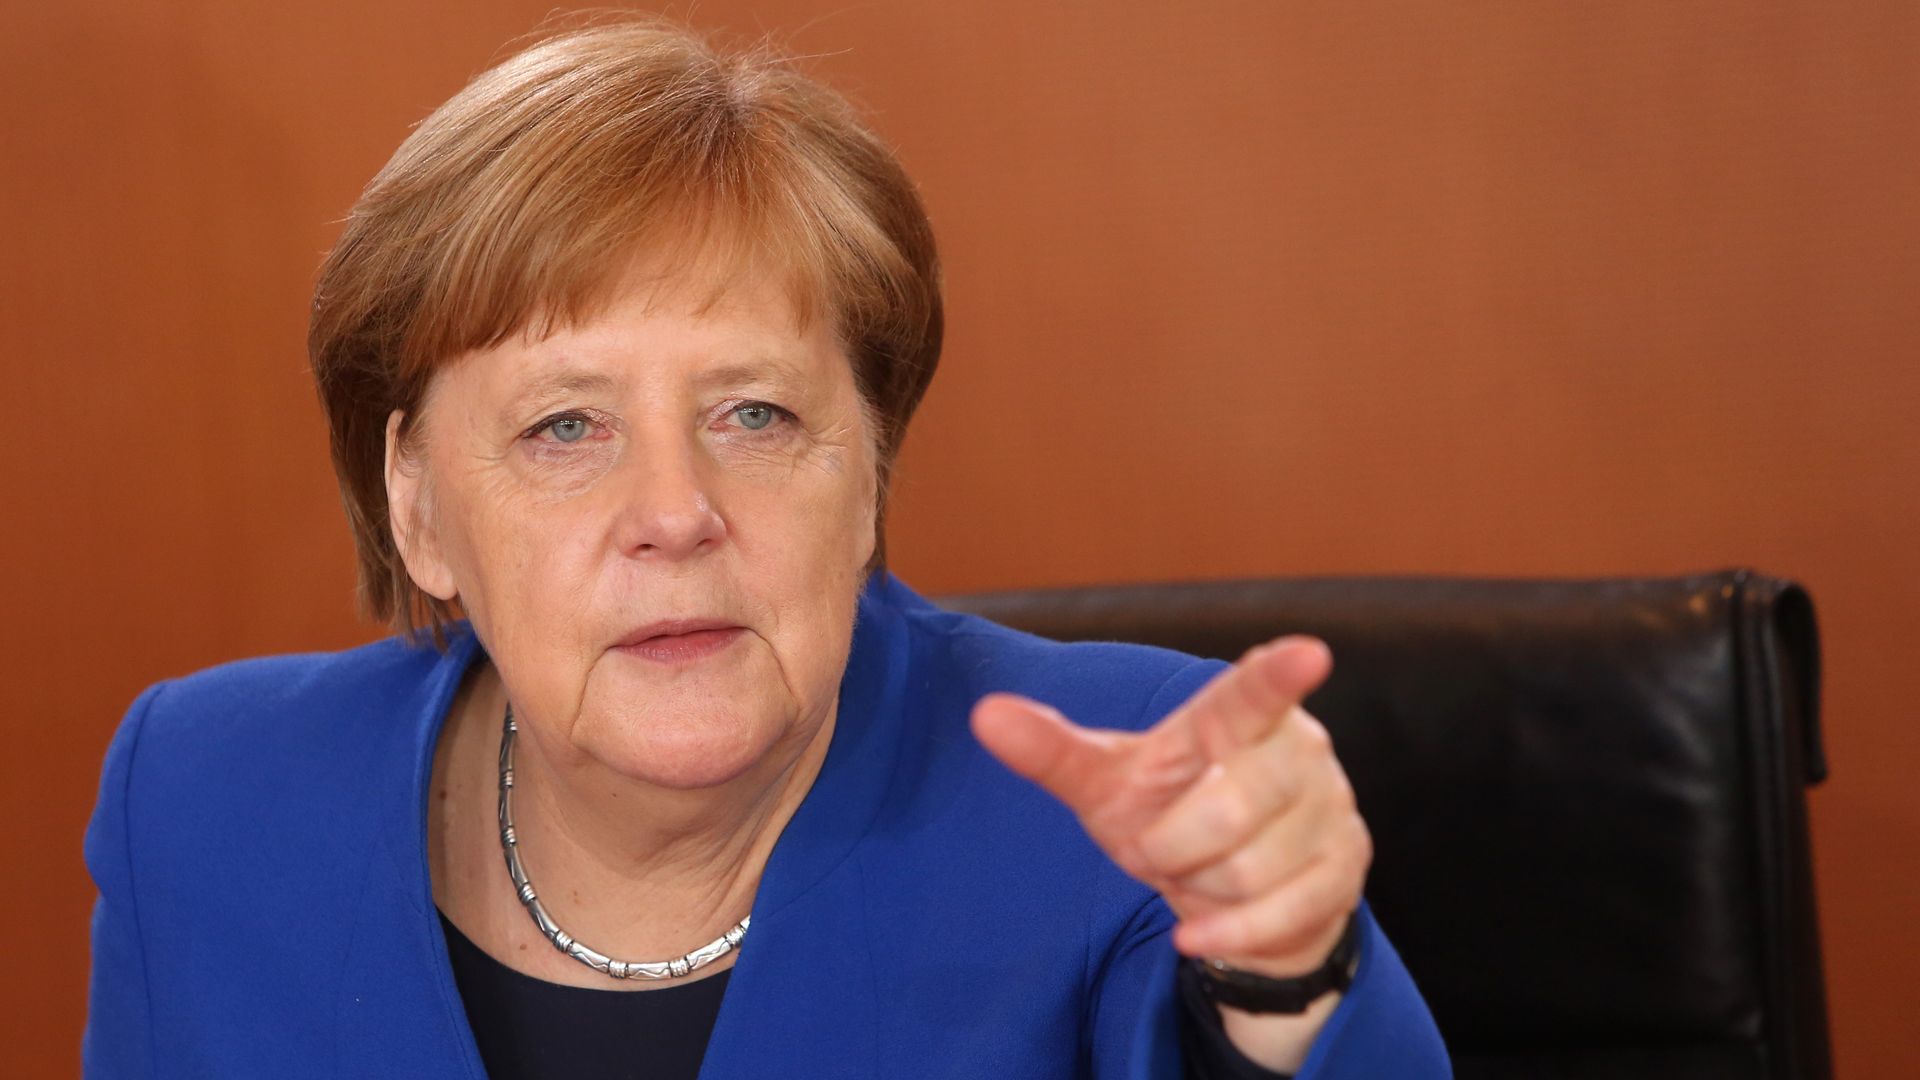 Angela Merkel speaking and gesturing